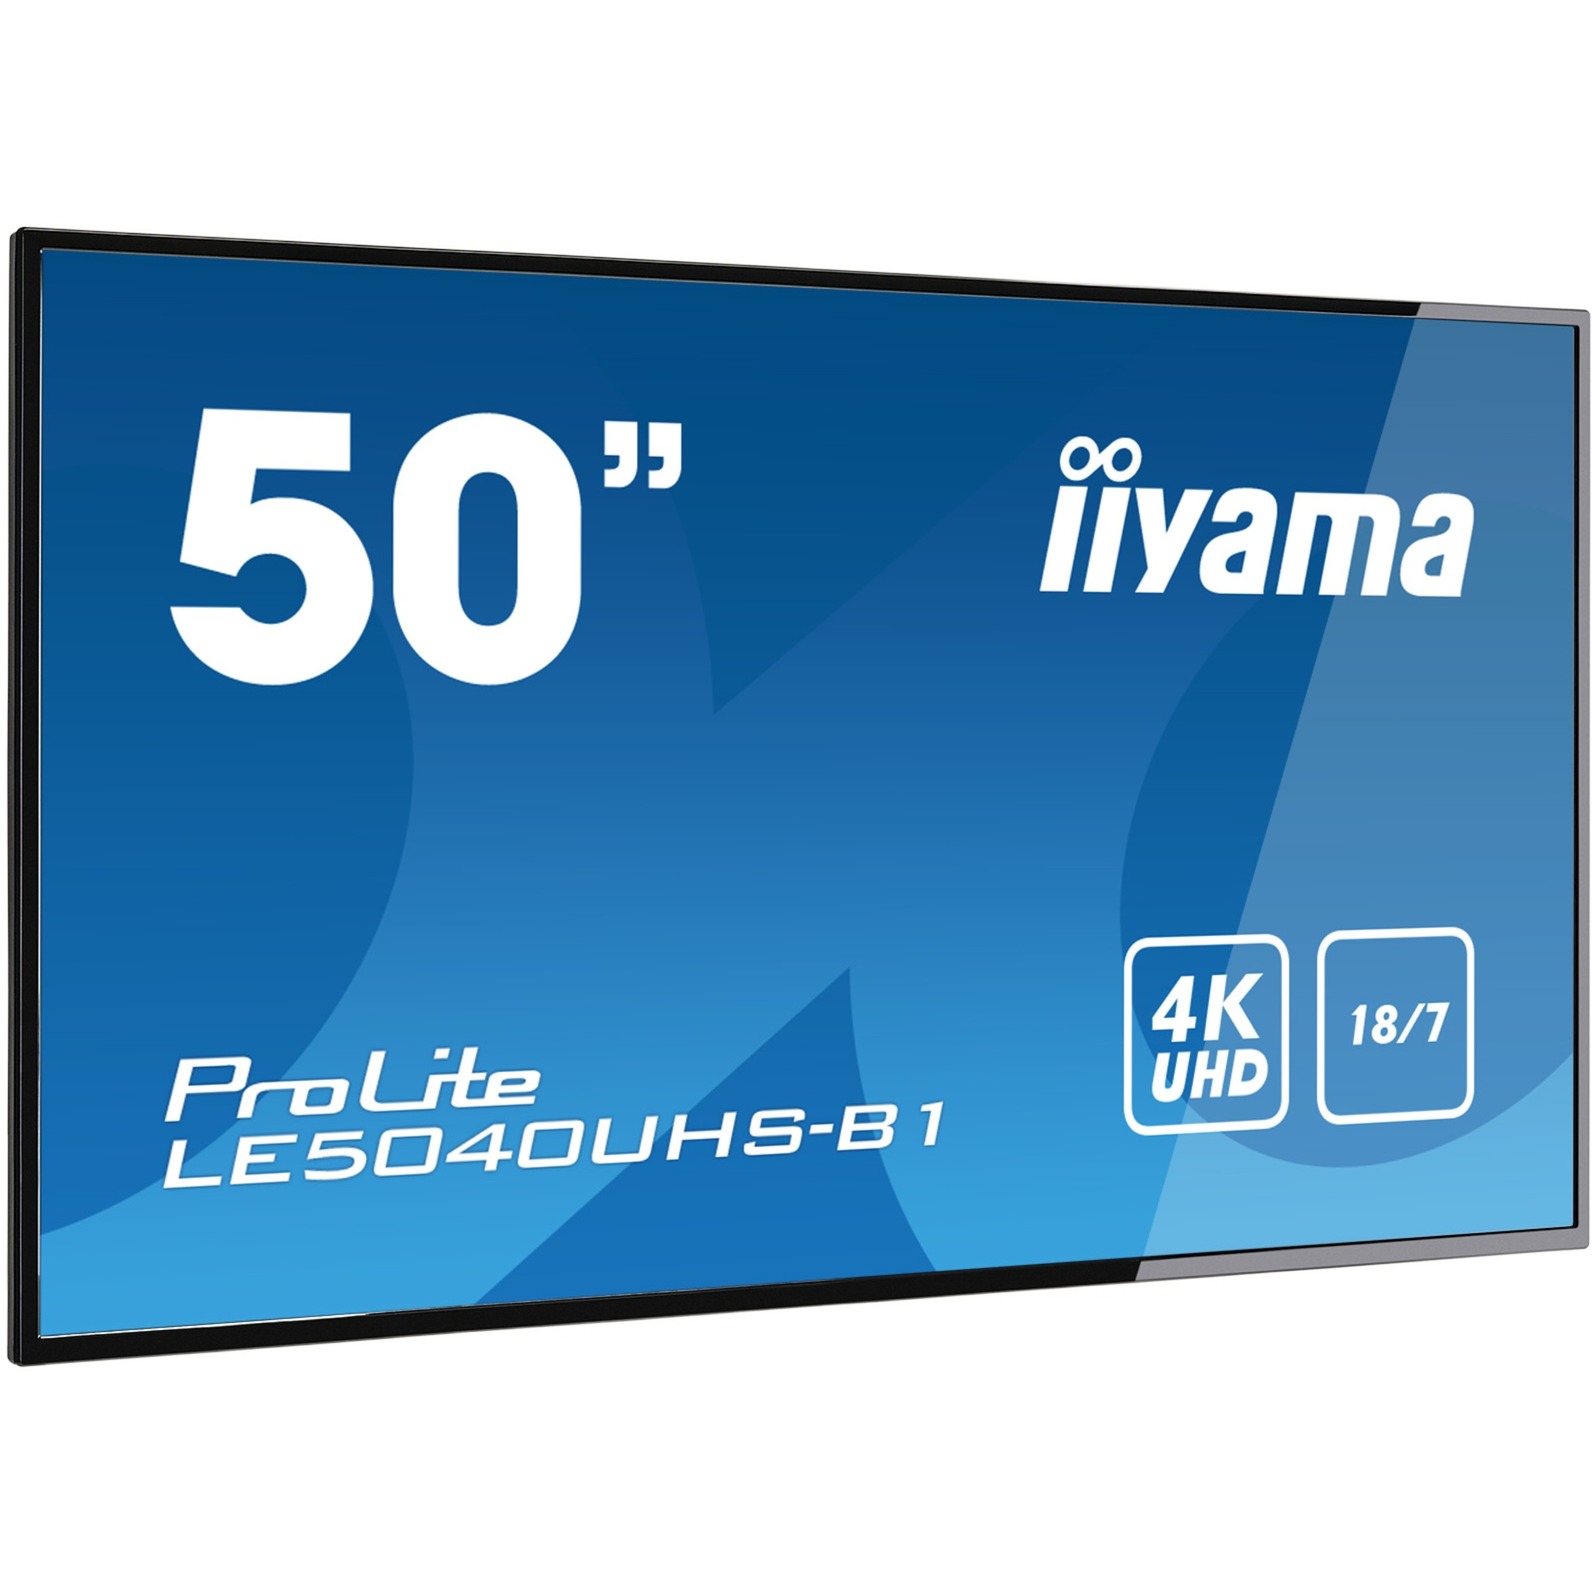 LE5040UHS-B1 wyświetlacz znaków 127 cm (50") LED (Dioda elektroluminescencyjna) 4K Ultra HD Digital signage flat panel Czarny, LED monitor